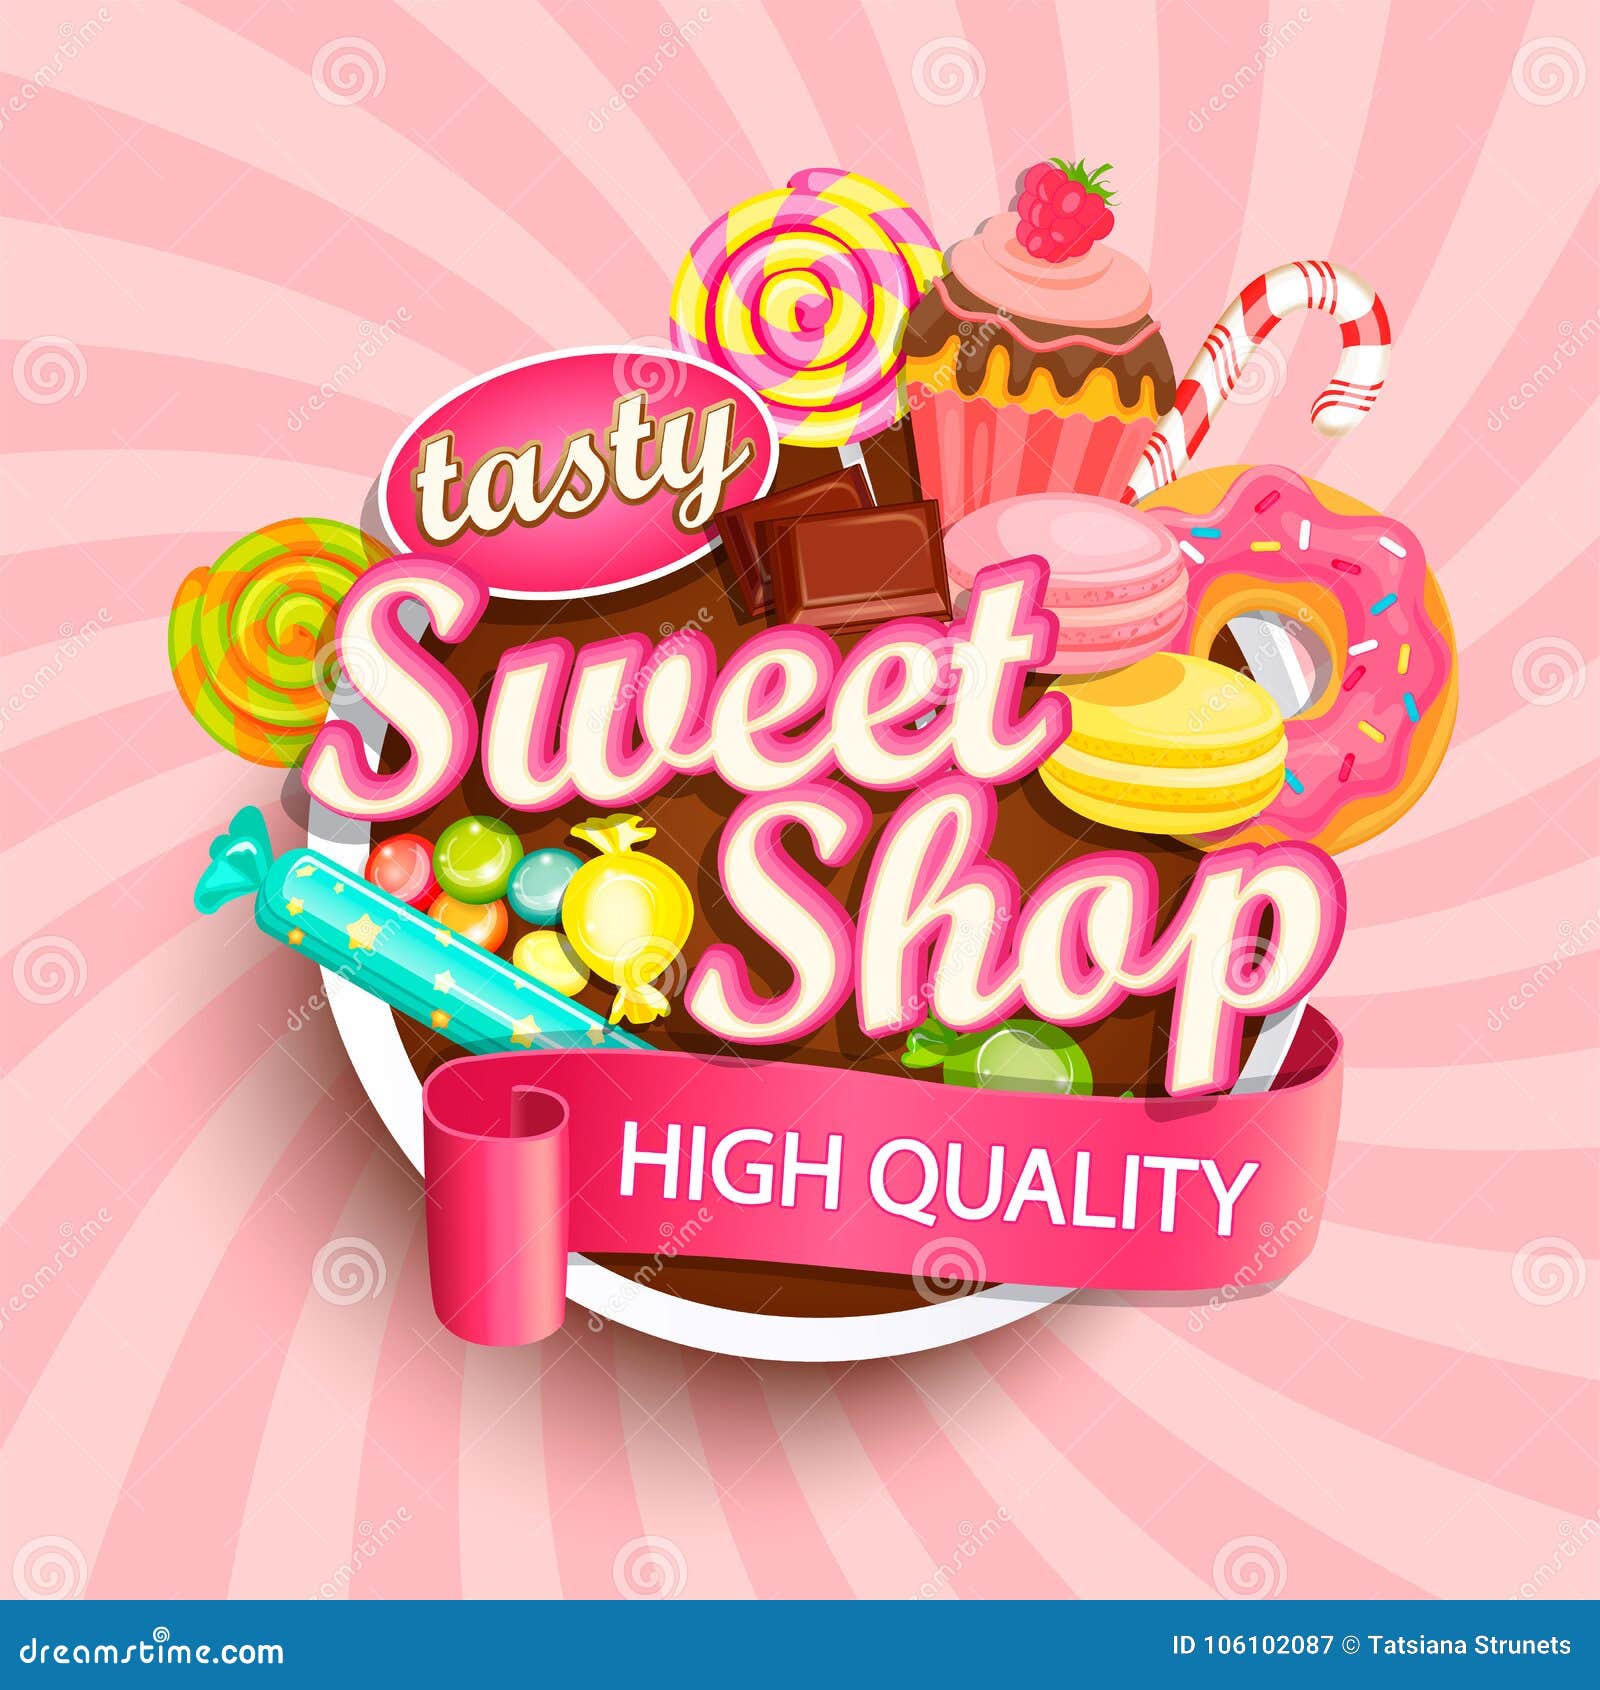 sweet shop logo, label or emblem.